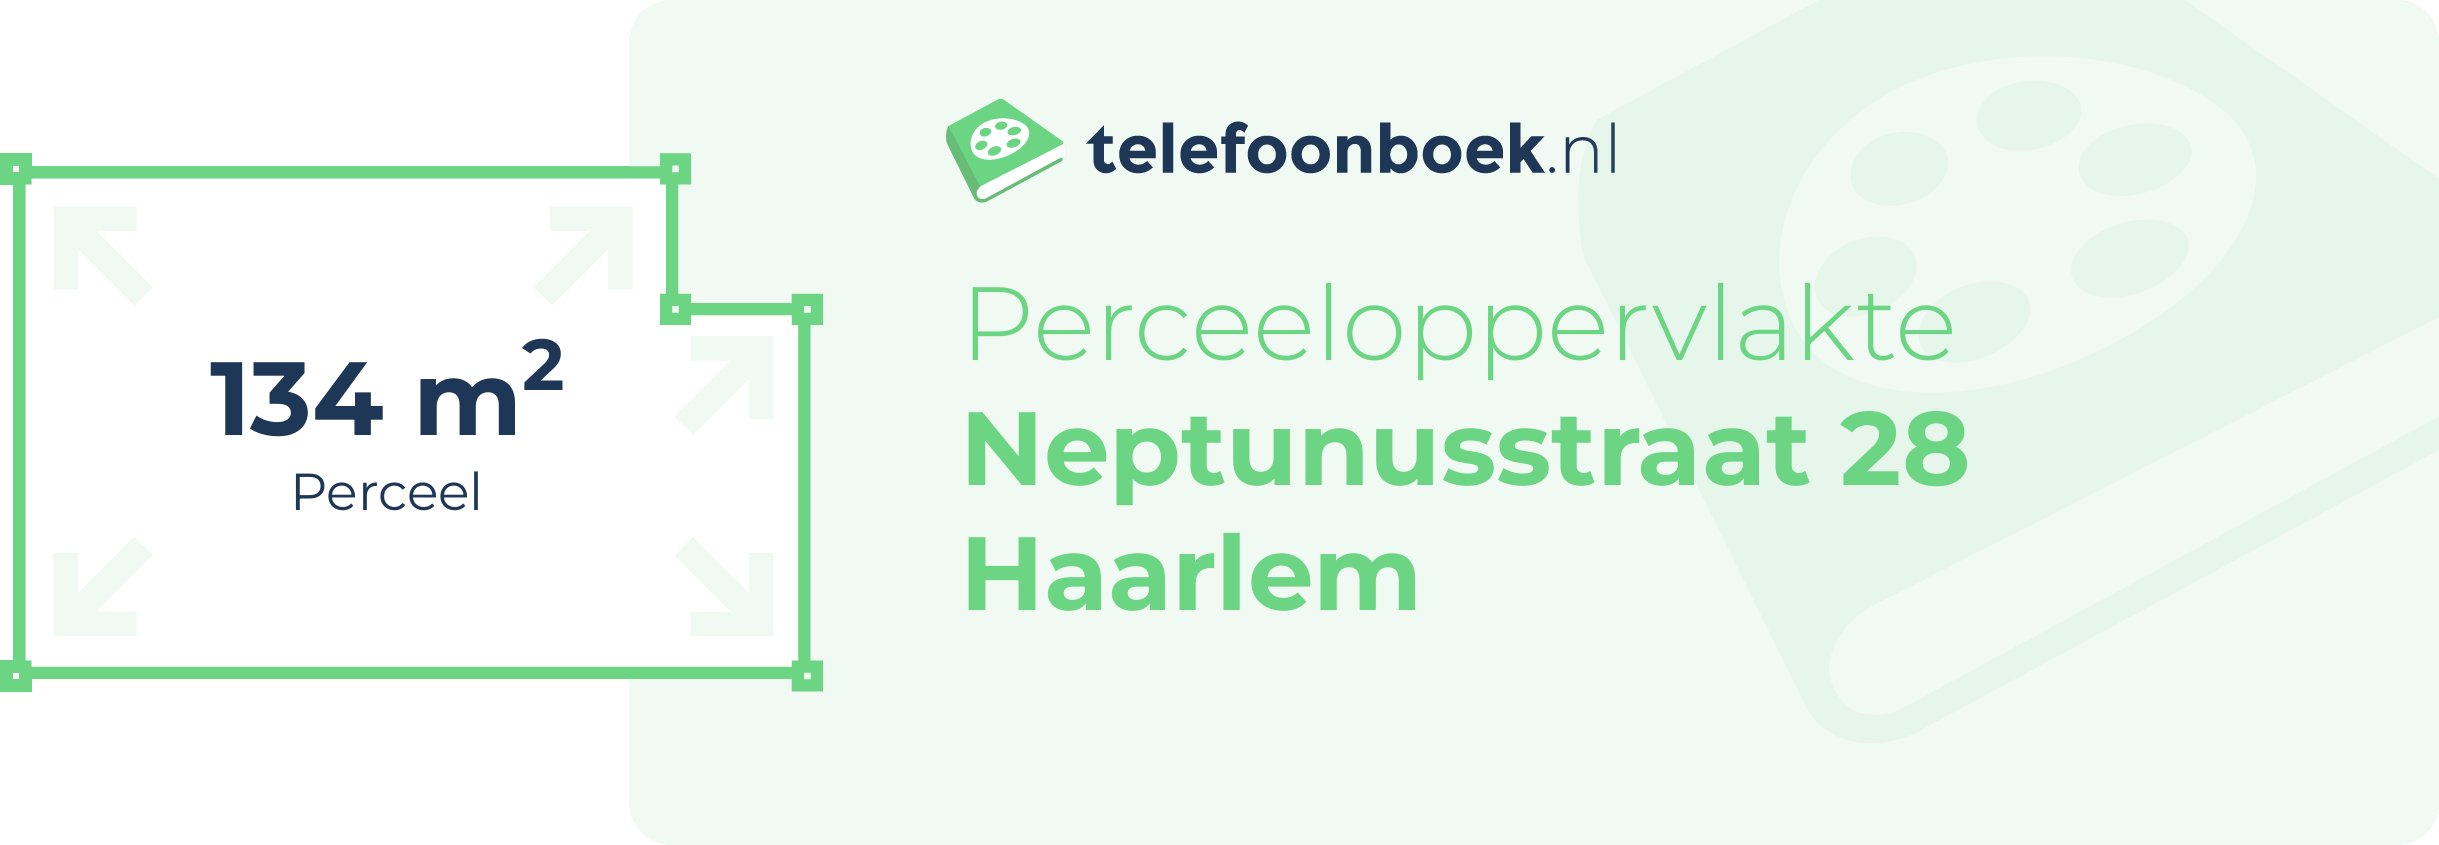 Perceeloppervlakte Neptunusstraat 28 Haarlem